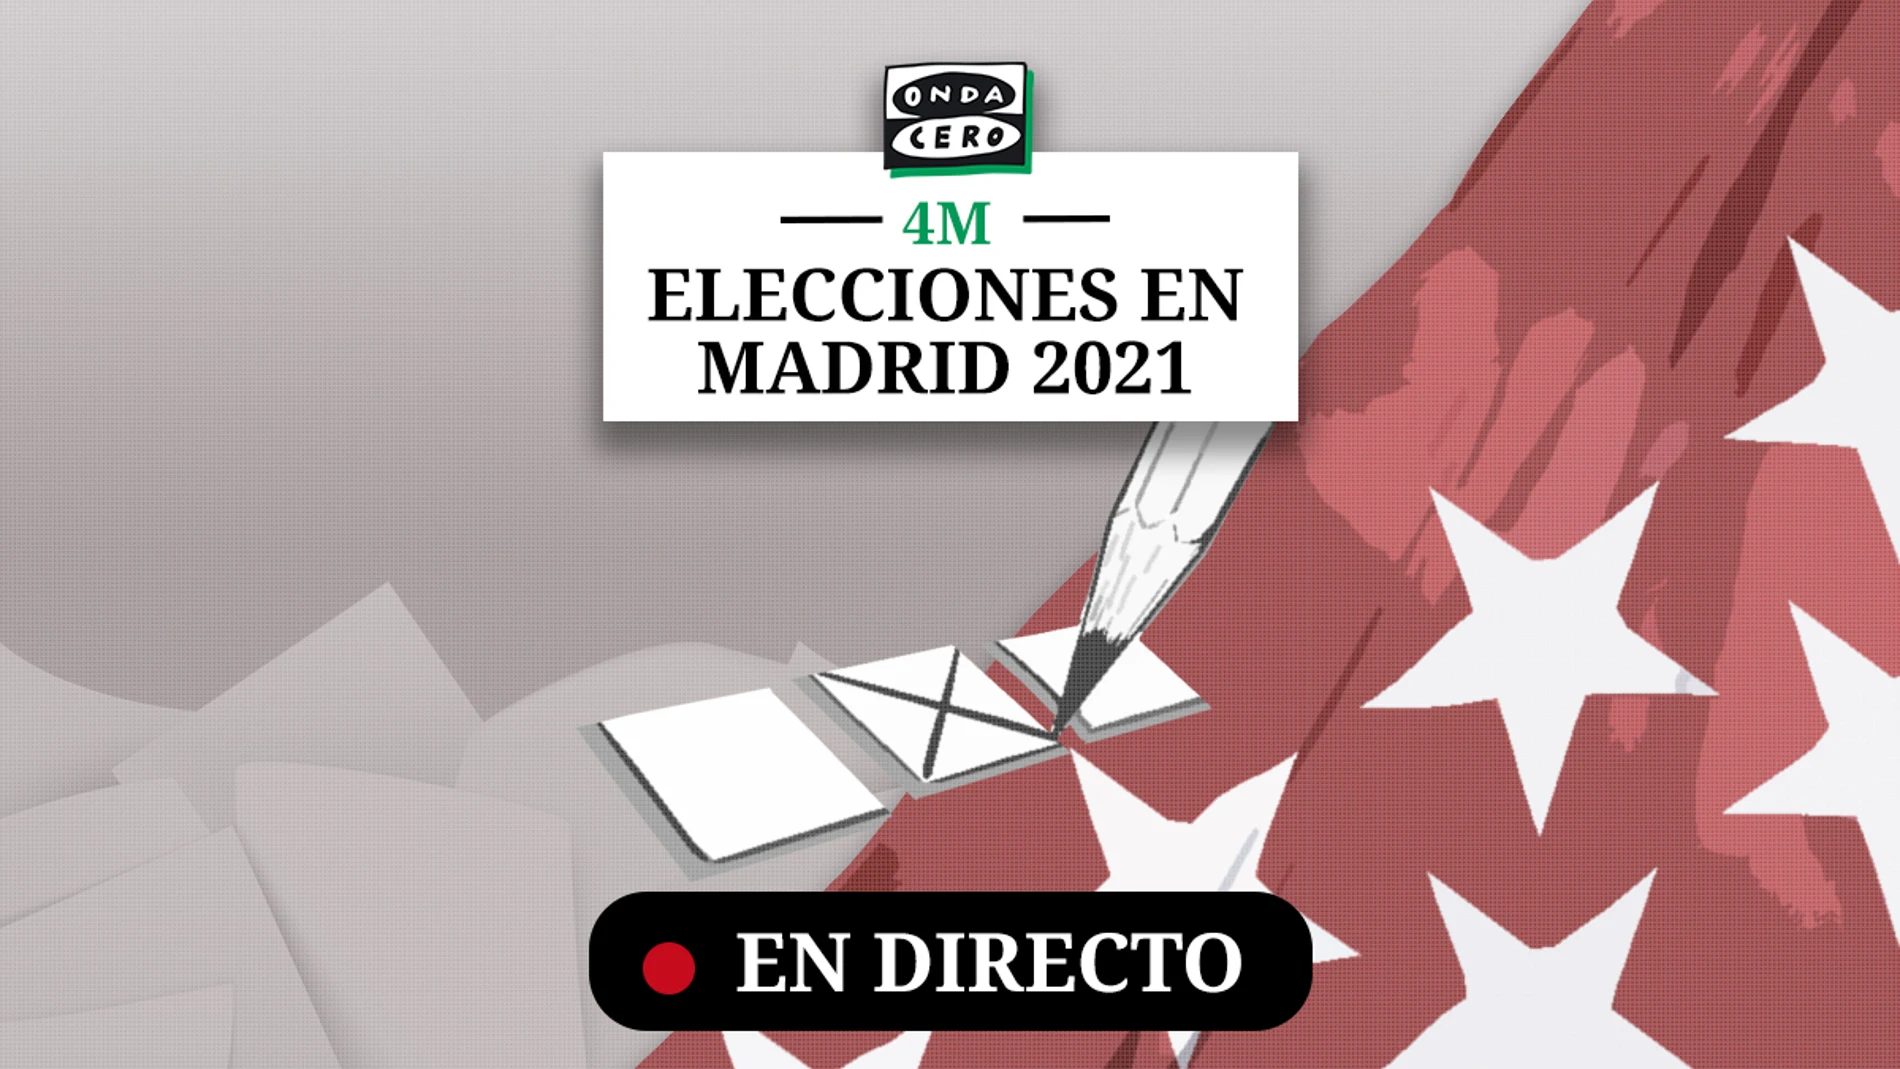 Sociología Impresionante Dormitorio Resultado y ganador en Parla de las Elecciones Madrid 2021 | Onda Cero Radio